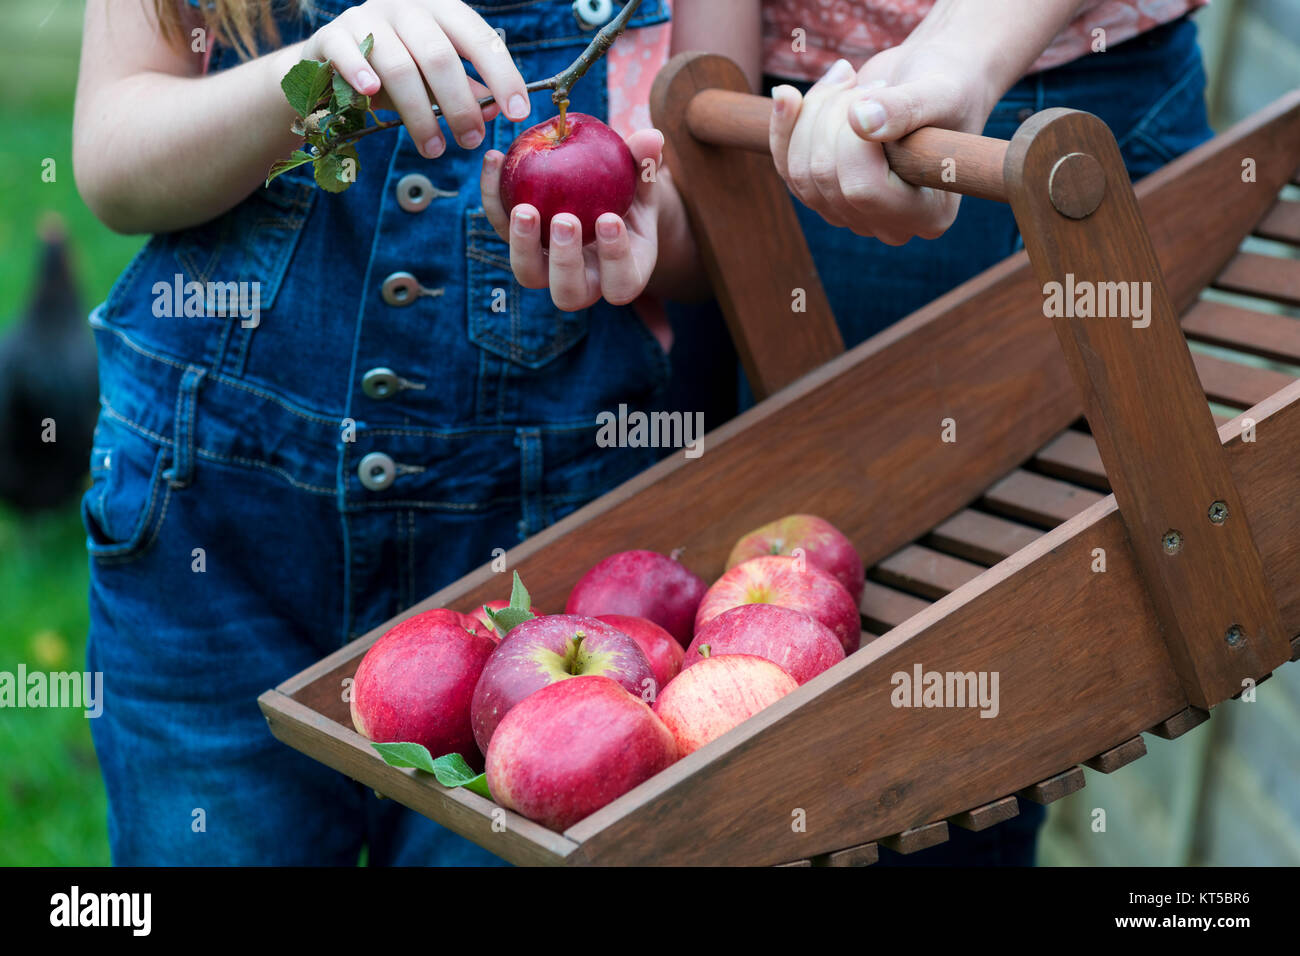 Familie Mitglieder sammeln Äpfel aus biologischem Obst Baum auf einer kleinen Holding, selektiver Fokus und bokeh Hintergrund Anzeige Kopie Raum Stockfoto